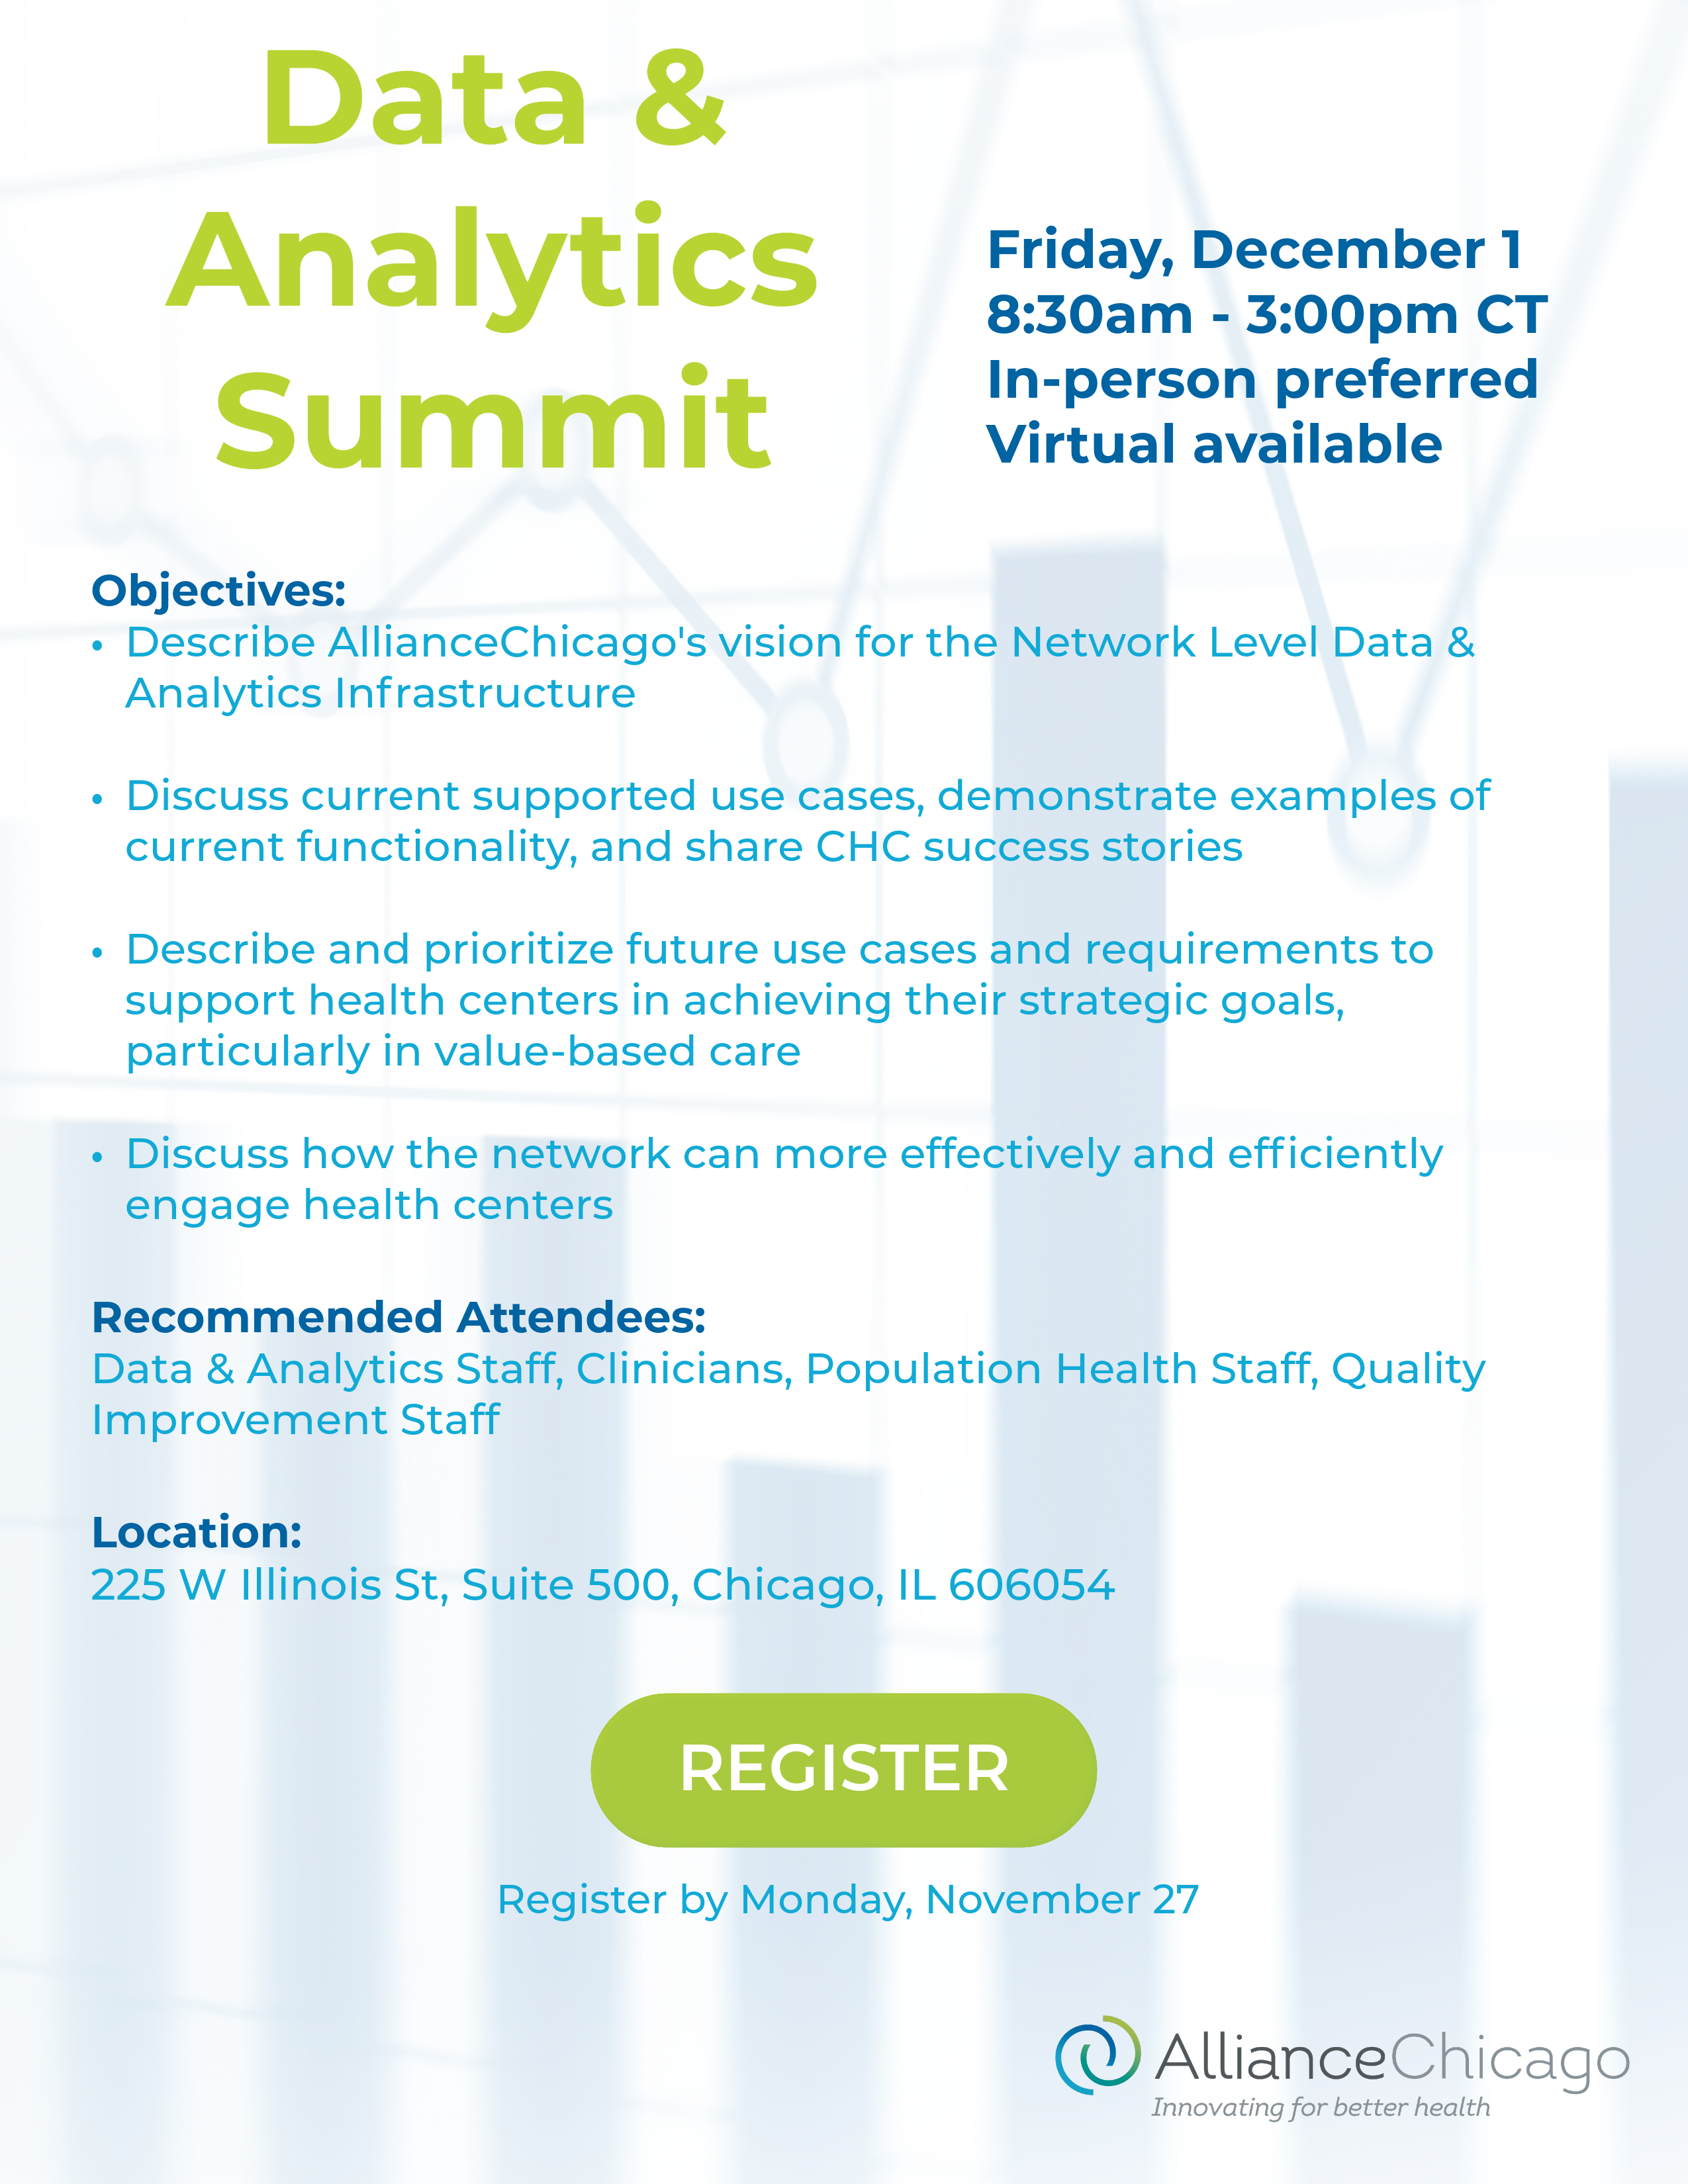 Data & Analytics Summit